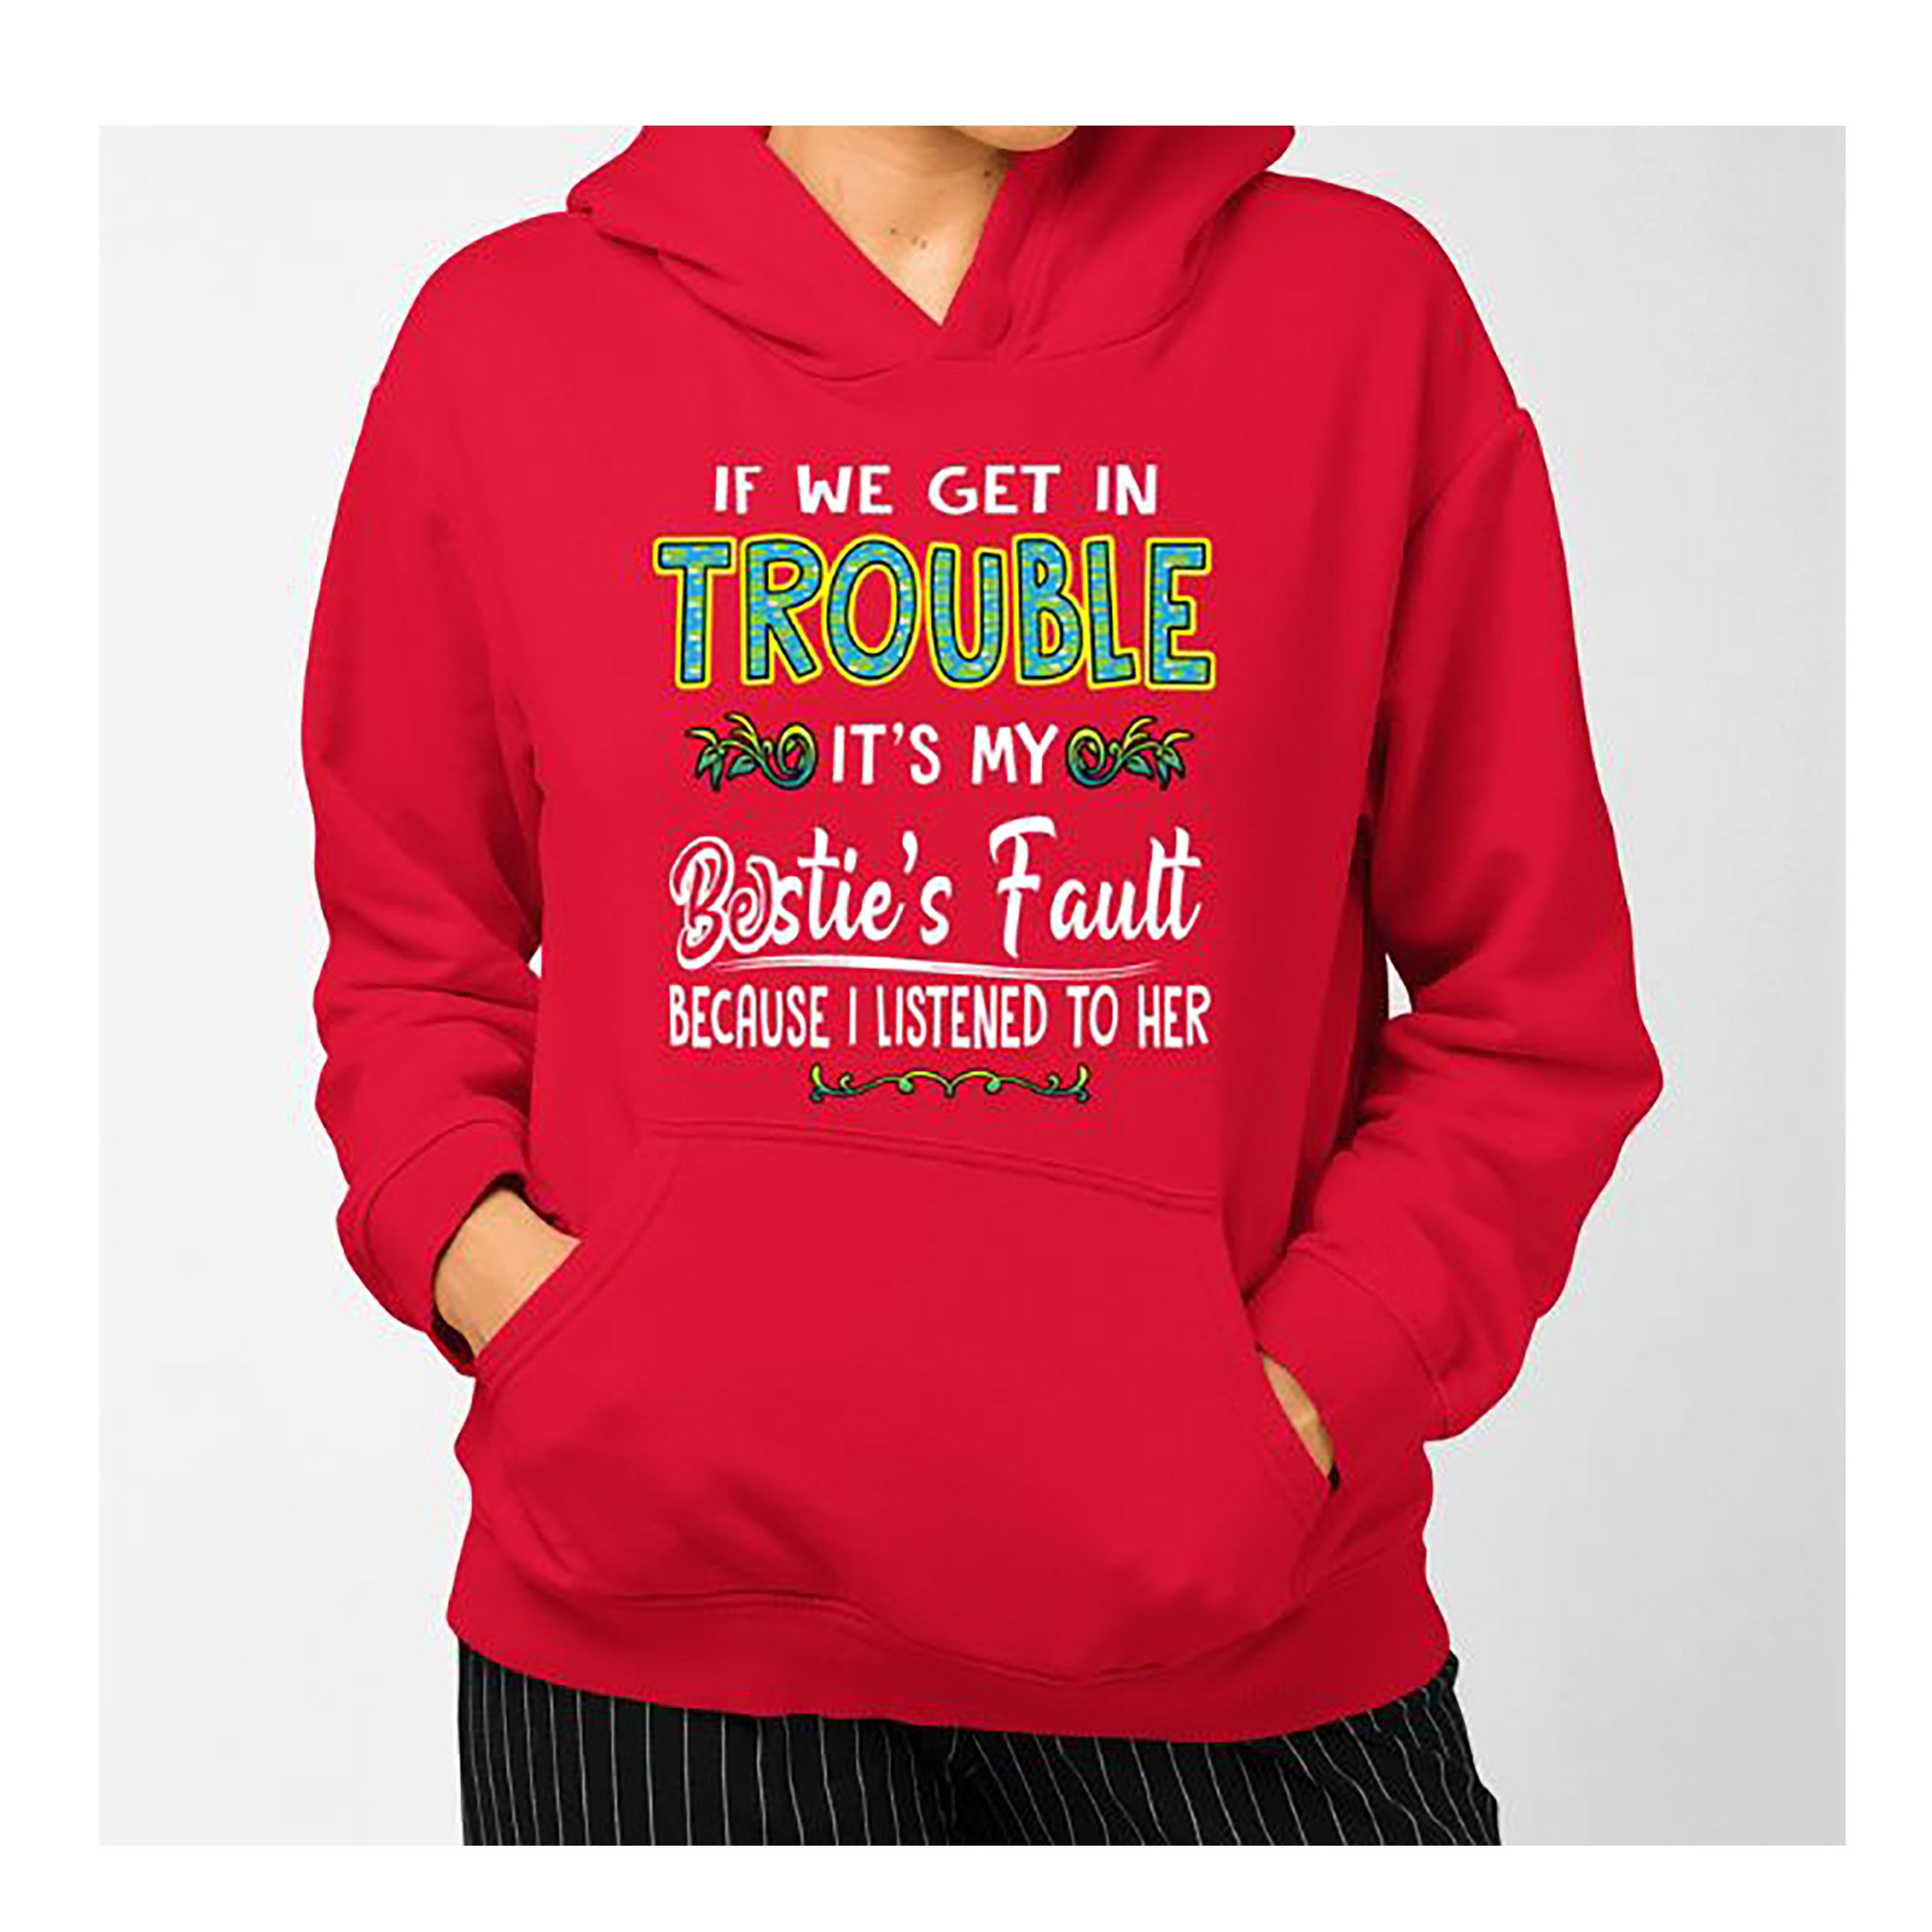 "IF WE GET IN TROUBLE" Hoodie & Sweatshirt